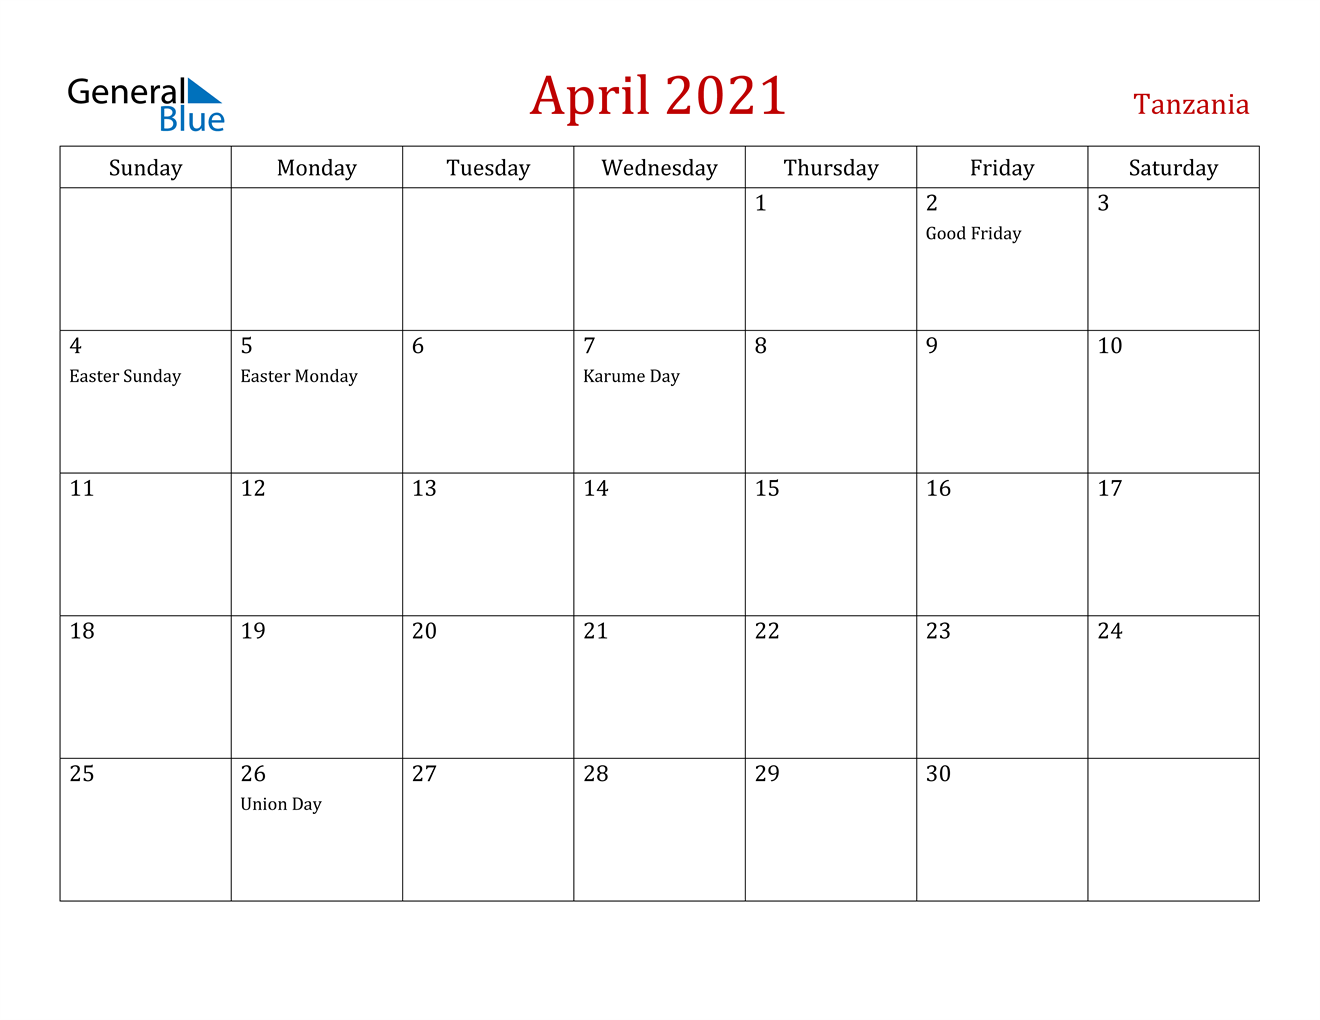 April 2021 Calendar - Tanzania